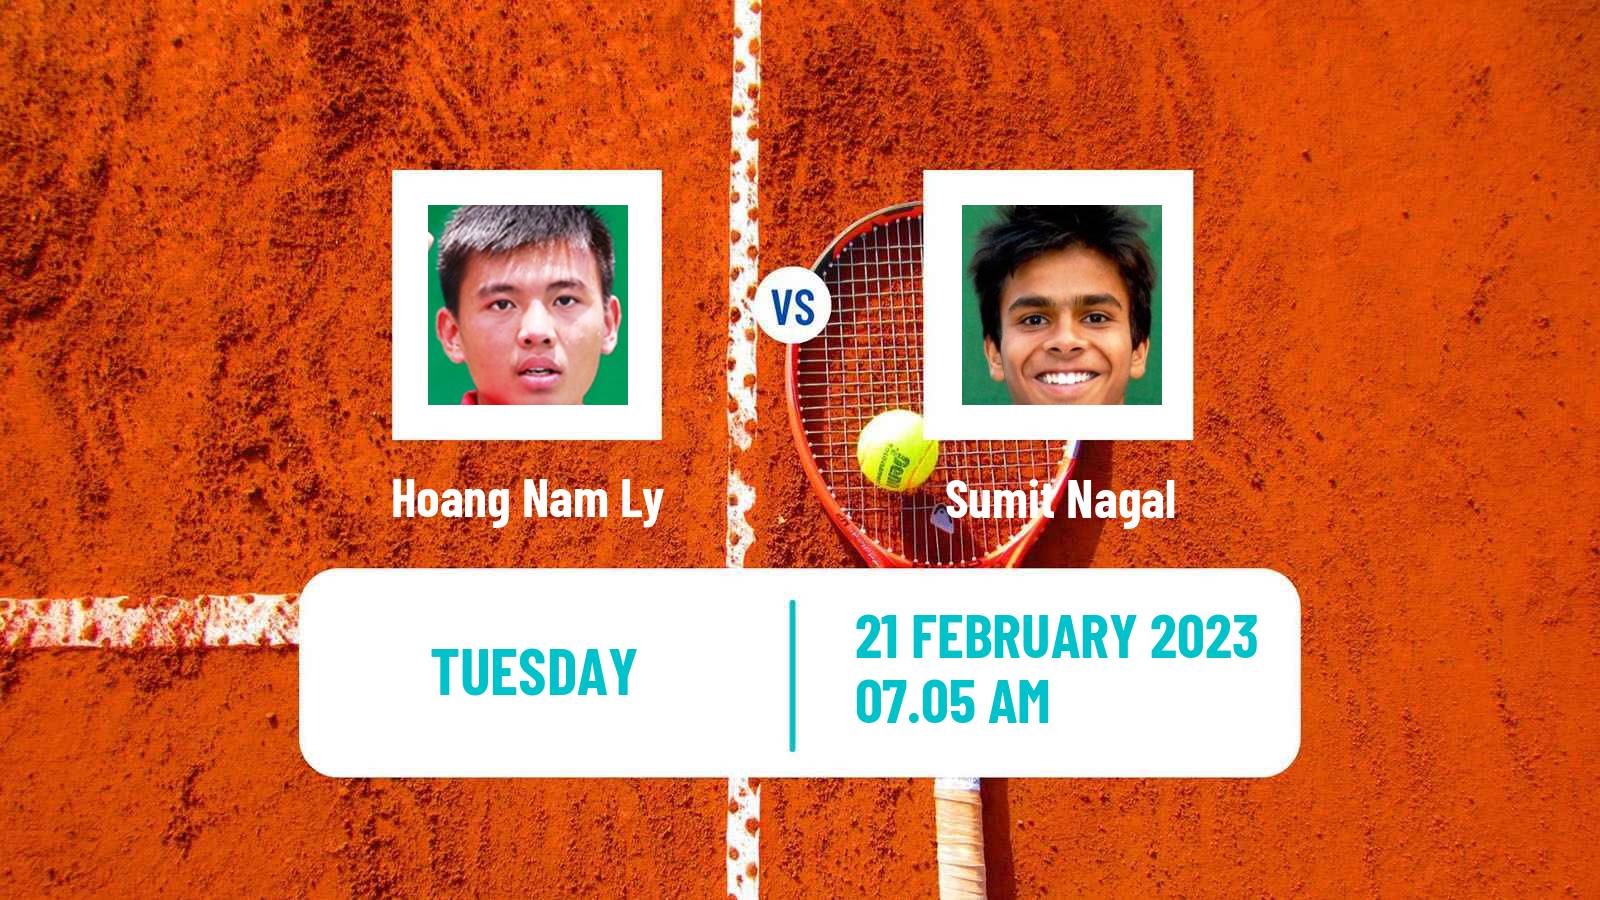 Tennis ATP Challenger Hoang Nam Ly - Sumit Nagal